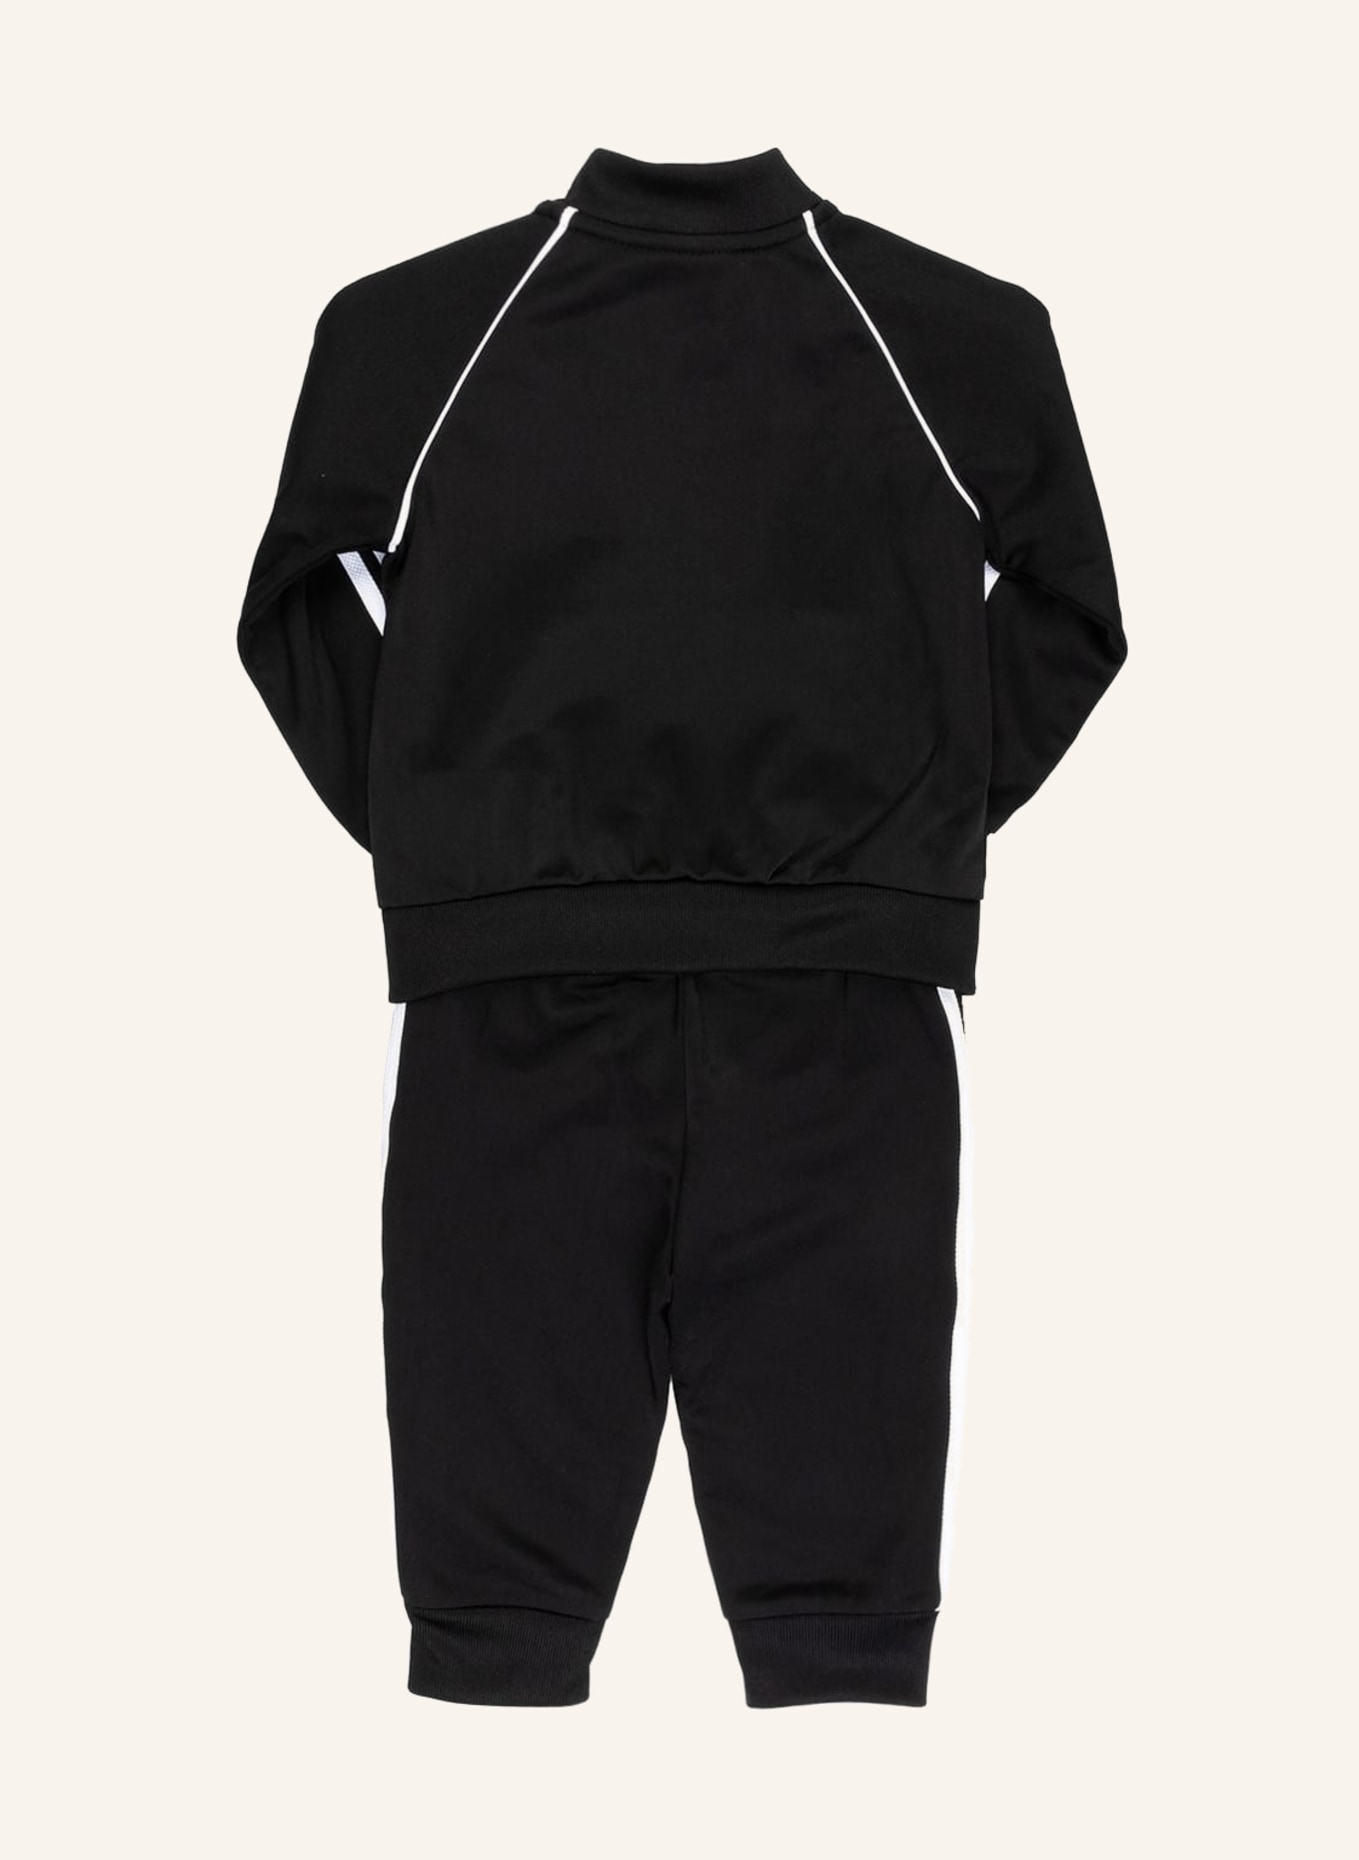 adidas Originals Trainingsanzug in weiss schwarz